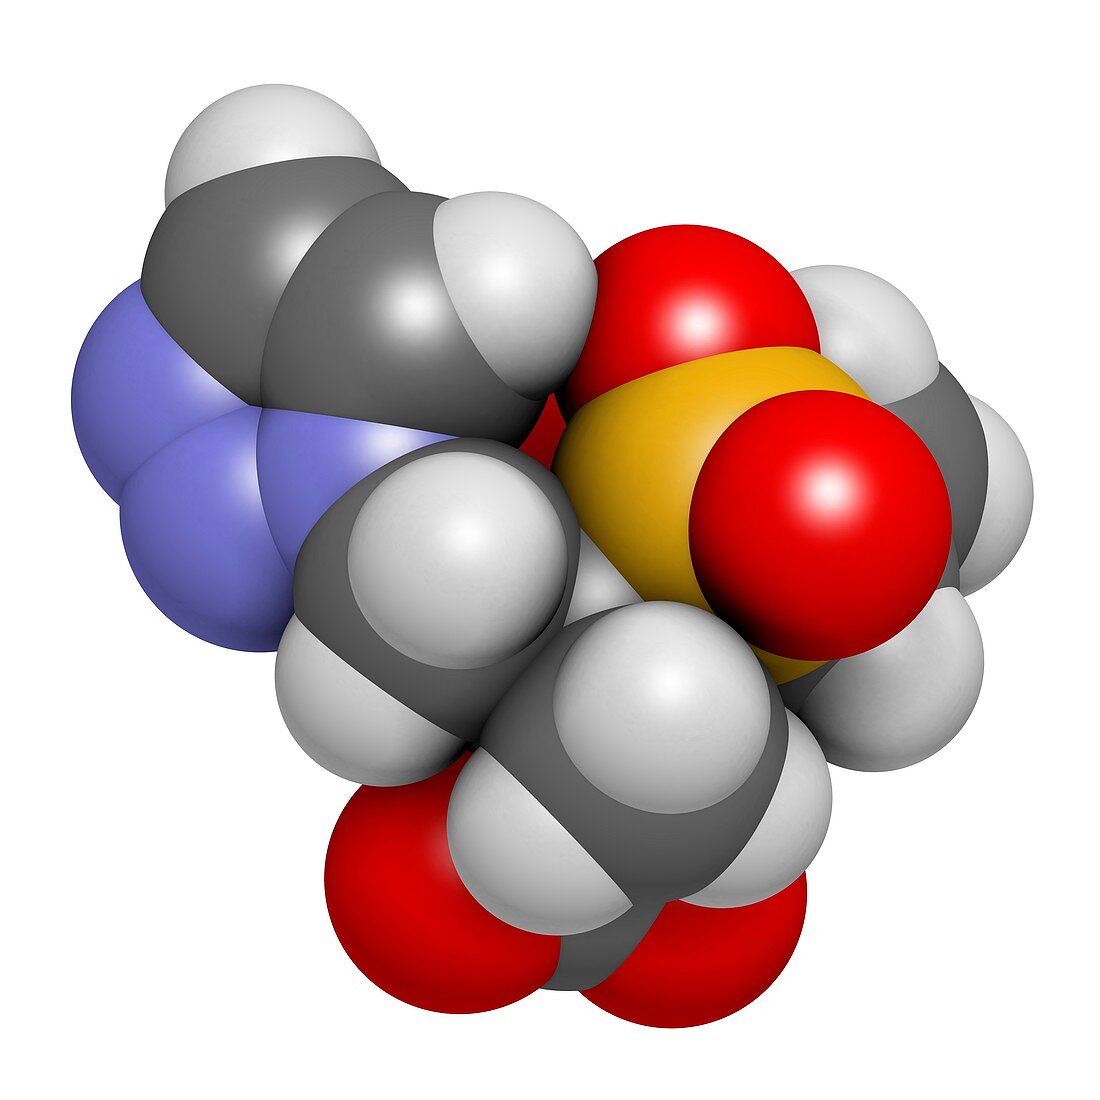 Tazobactam drug molecule